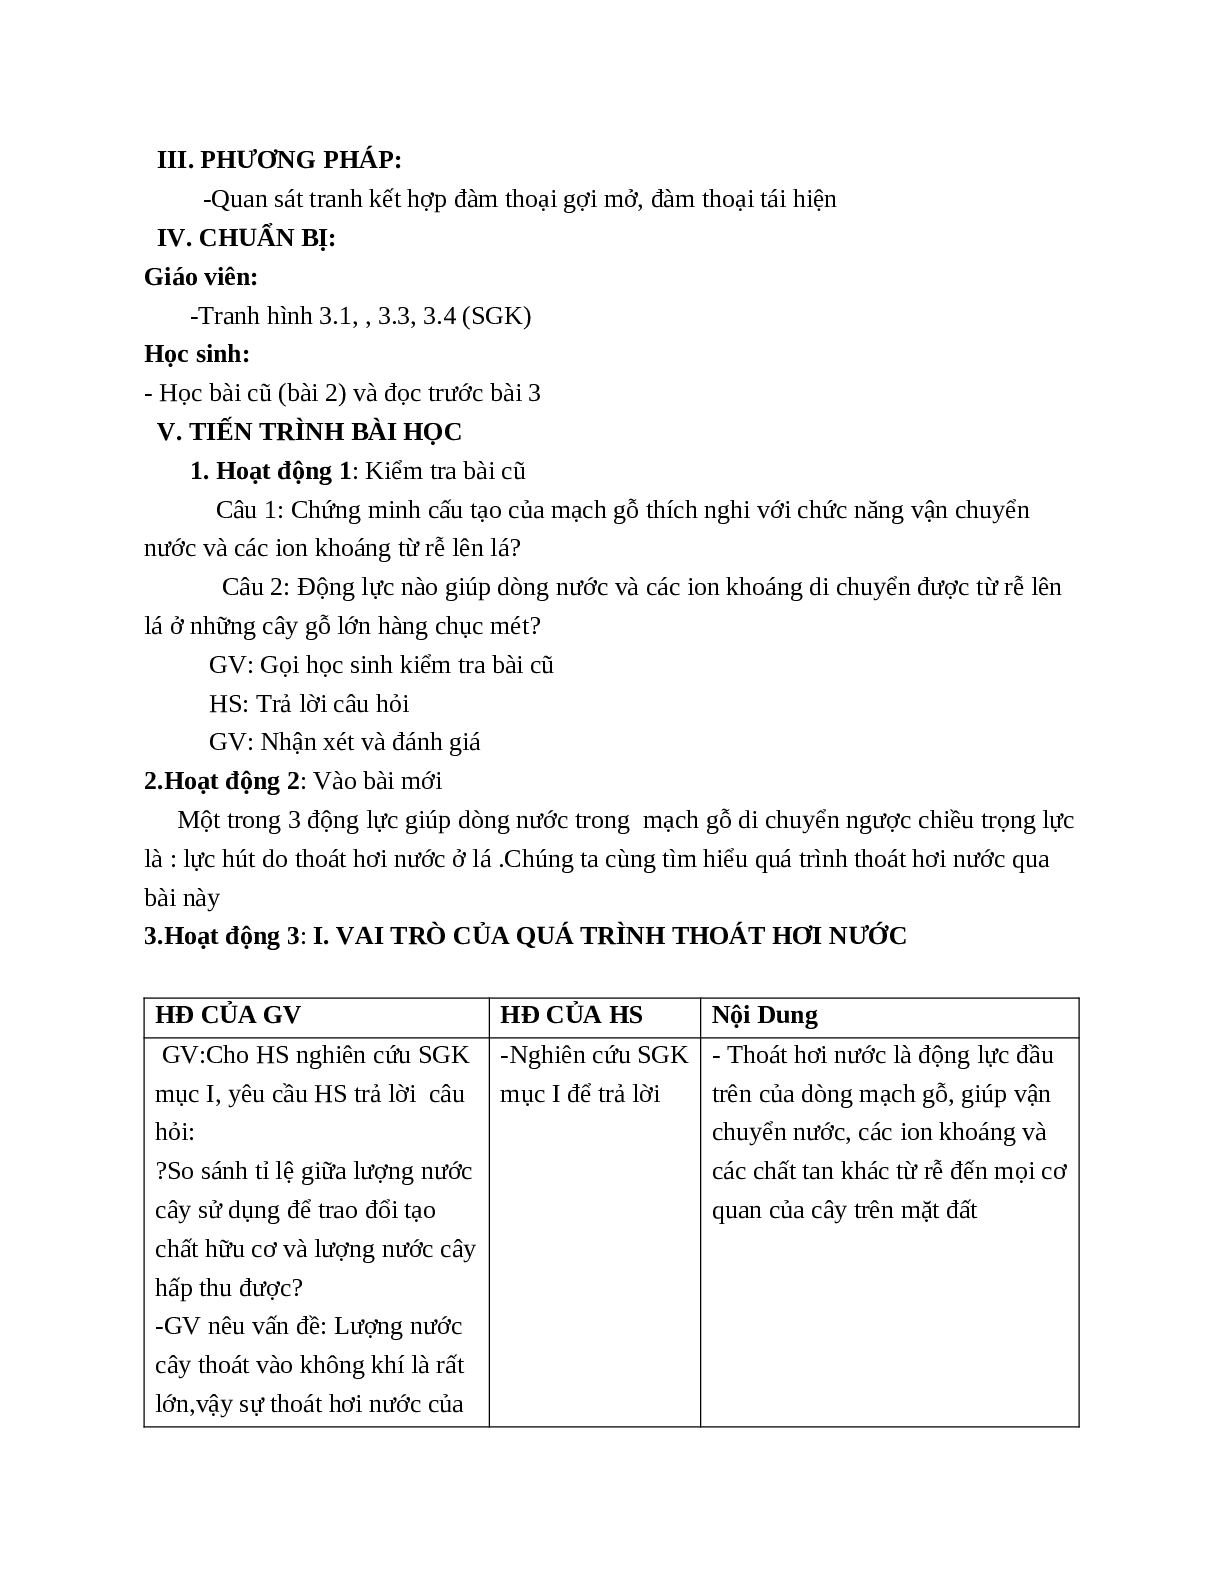 Giáo án Sinh học 11 Bài 3: Thoát hơi nước mới nhất (trang 2)